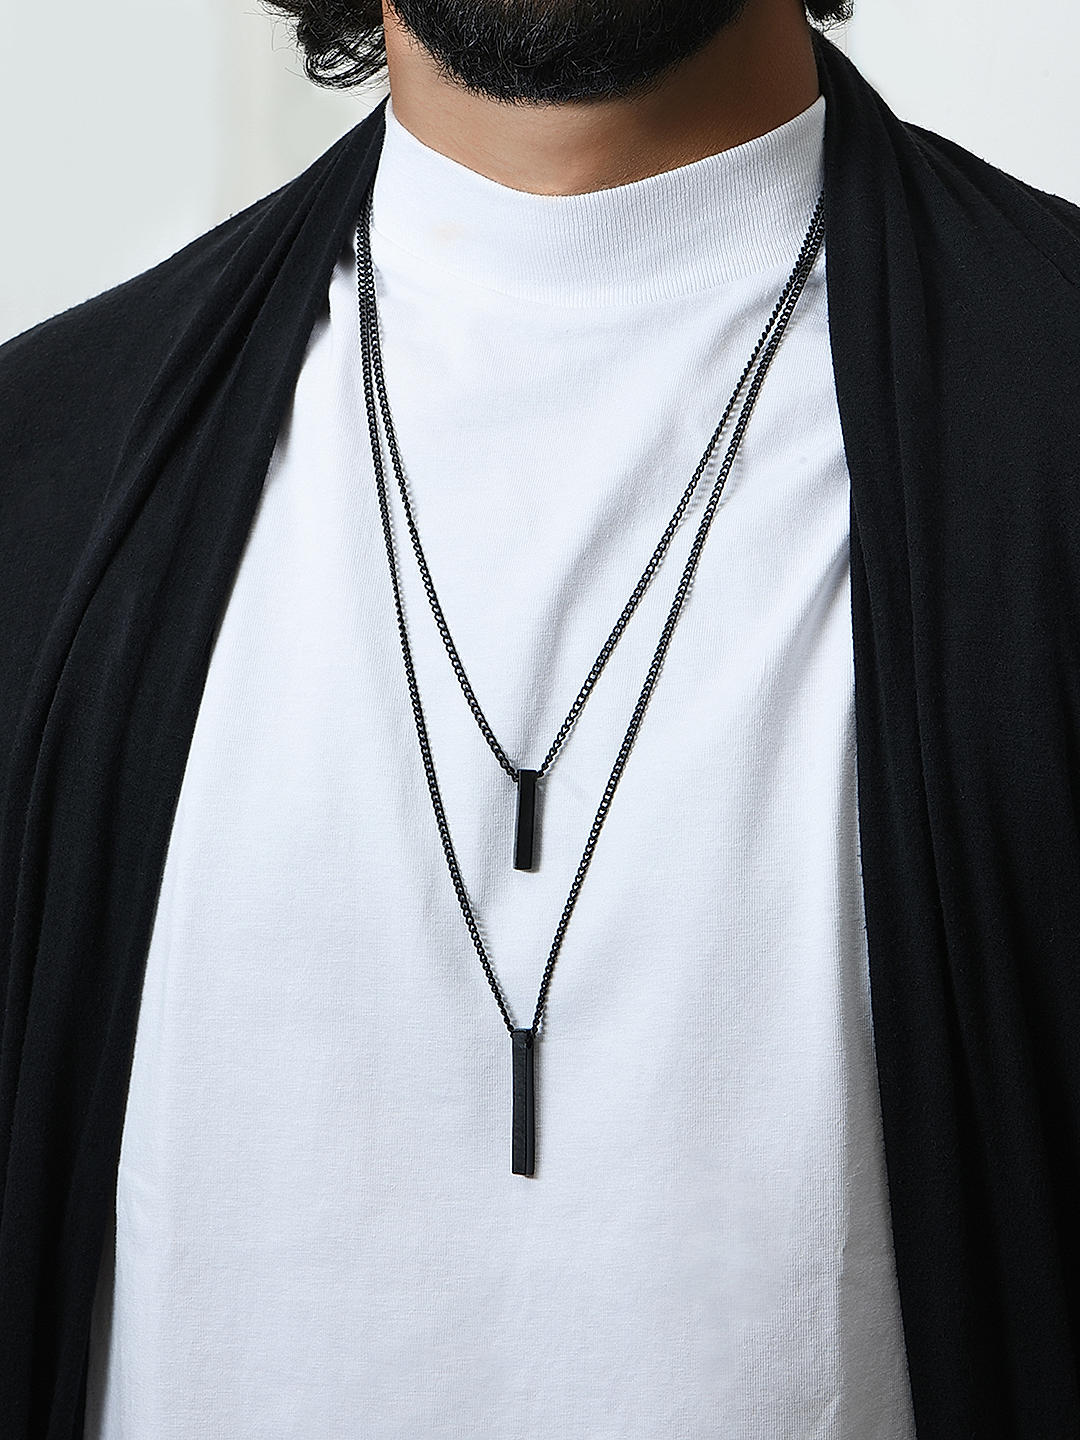 Black Onyx Bead Necklace - Men's Jewelry | Lazaro SoHo